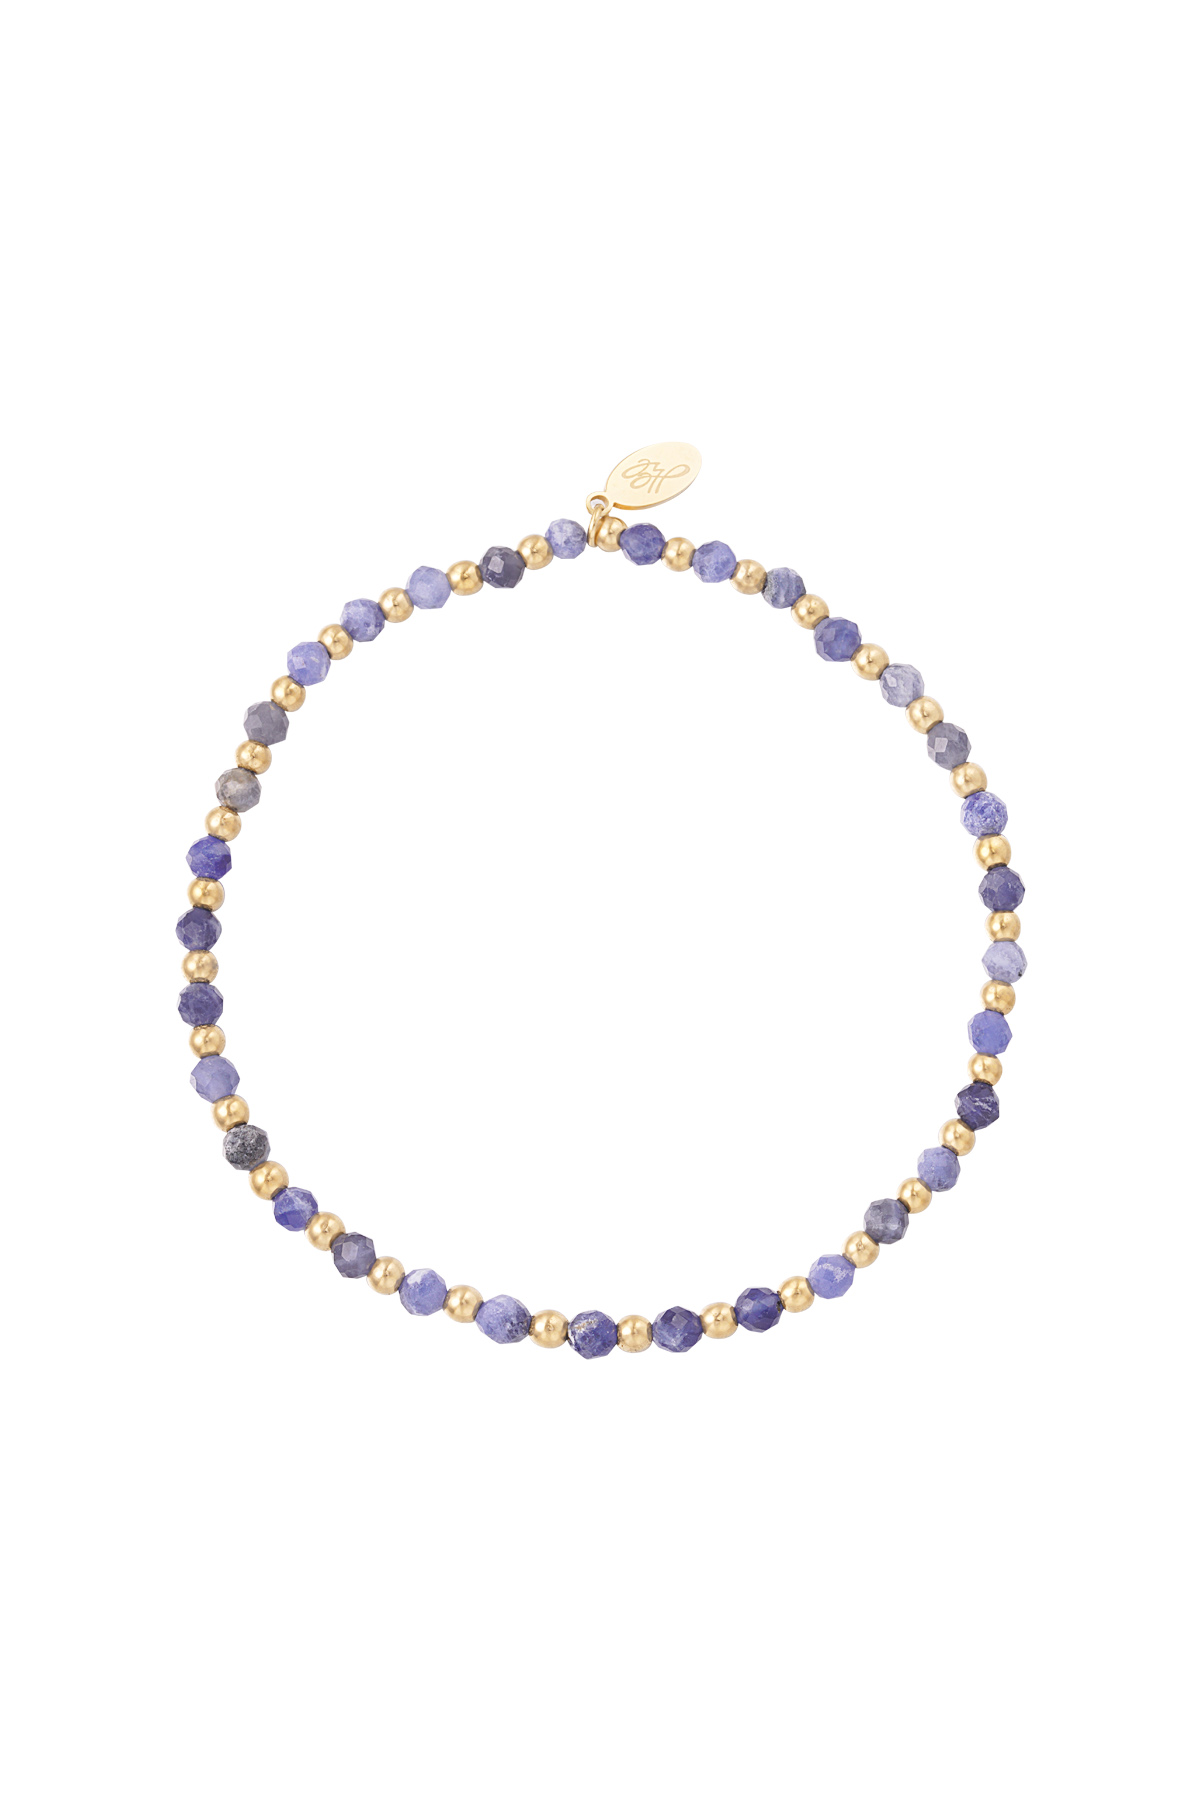 Bleu & Or / Bracelet perles - violet/or Image9